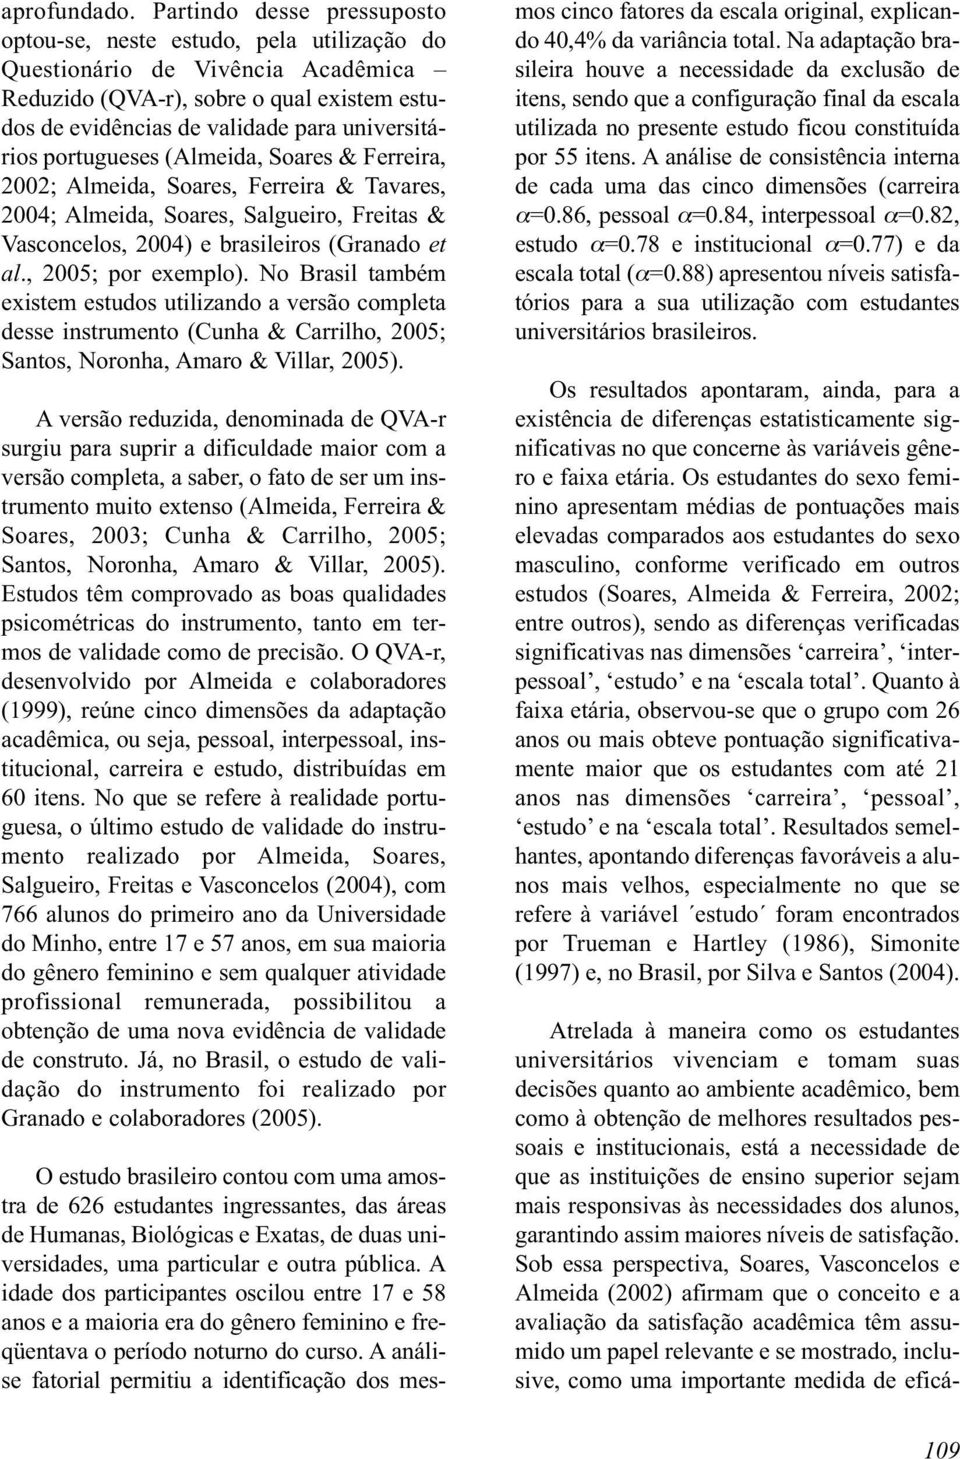 portugueses (Almeida, Soares & Ferreira, 2002; Almeida, Soares, Ferreira & Tavares, 2004; Almeida, Soares, Salgueiro, Freitas & Vasconcelos, 2004) e brasileiros (Granado et al., 2005; por exemplo).